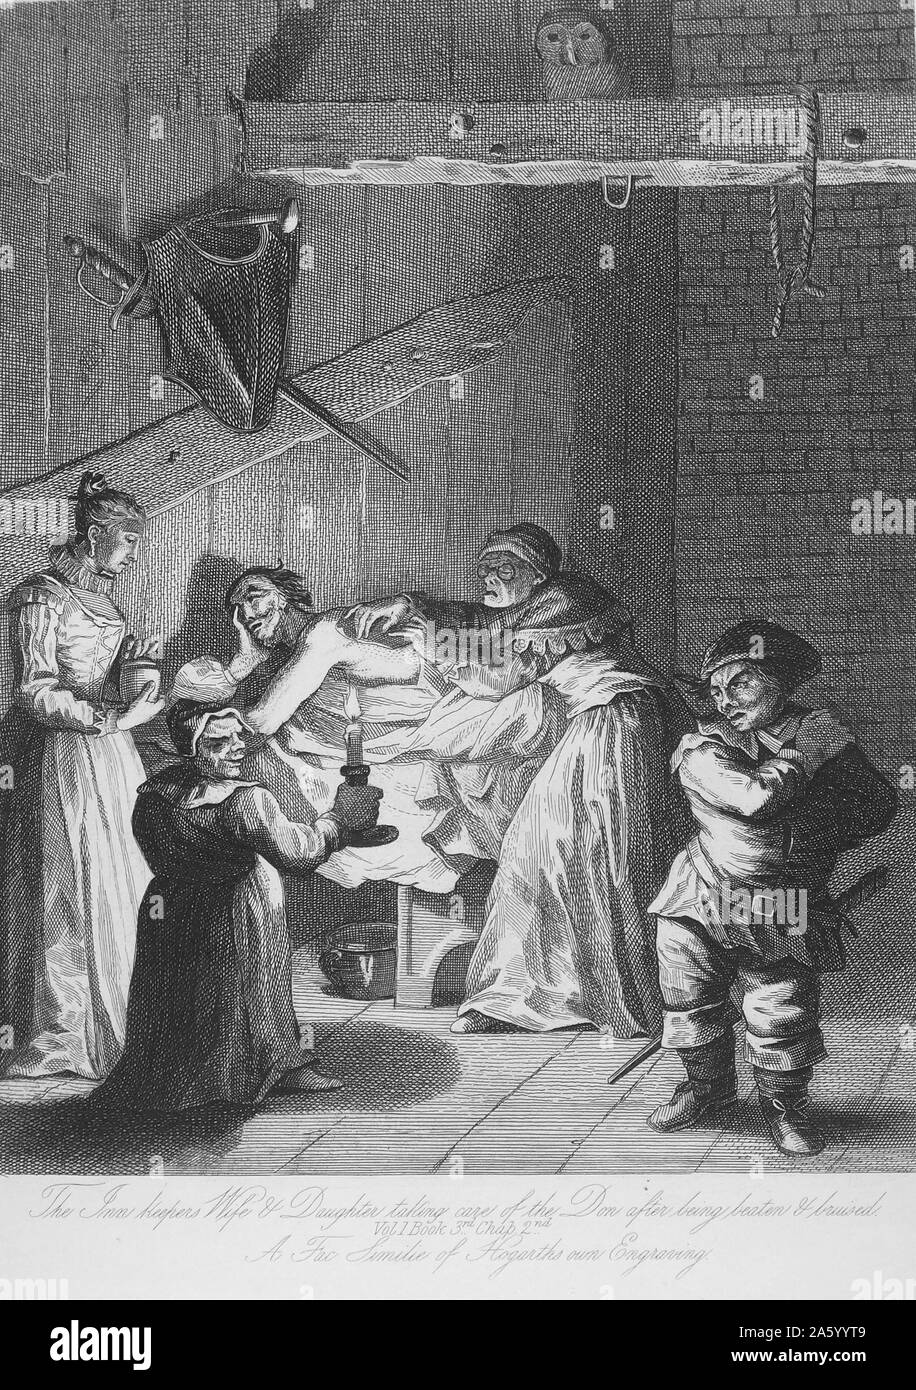 Kupferstich von William Hogarth (1697-1764), englischer Maler, Grafiker, bildhafte Satiriker, Gesellschaftskritiker und Karikaturist, mit zukunftsweisenden westlichen sequenziellen Kunst gutgeschrieben wurde. Vom 18. Jahrhundert. Stockfoto